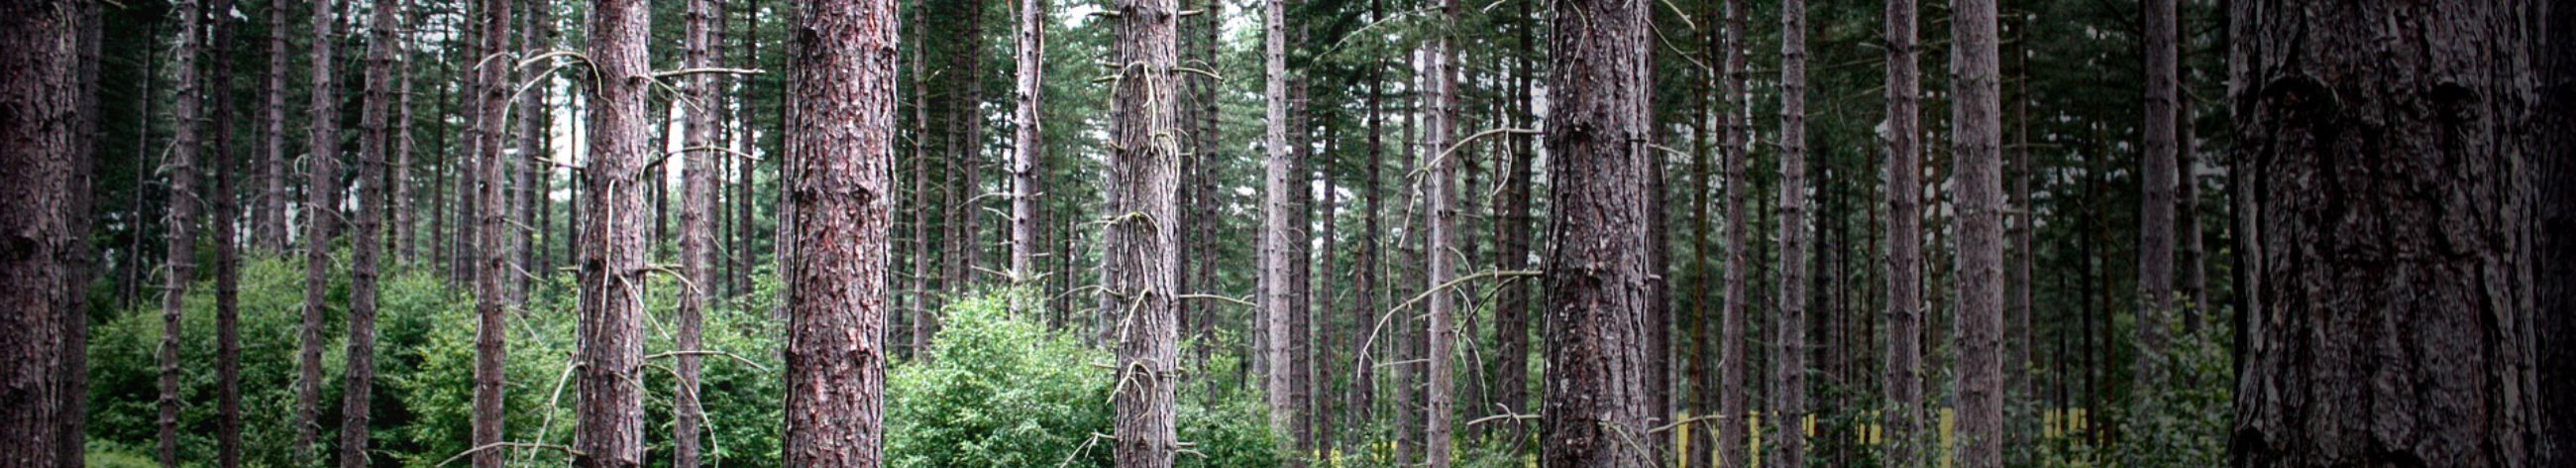 Country tootevalikust leiab sobiliku metsahaagise nii hobimetsnik kui ka professionaal.  Meie metsahaagised on testitud karmis põhjamaises kliimas.